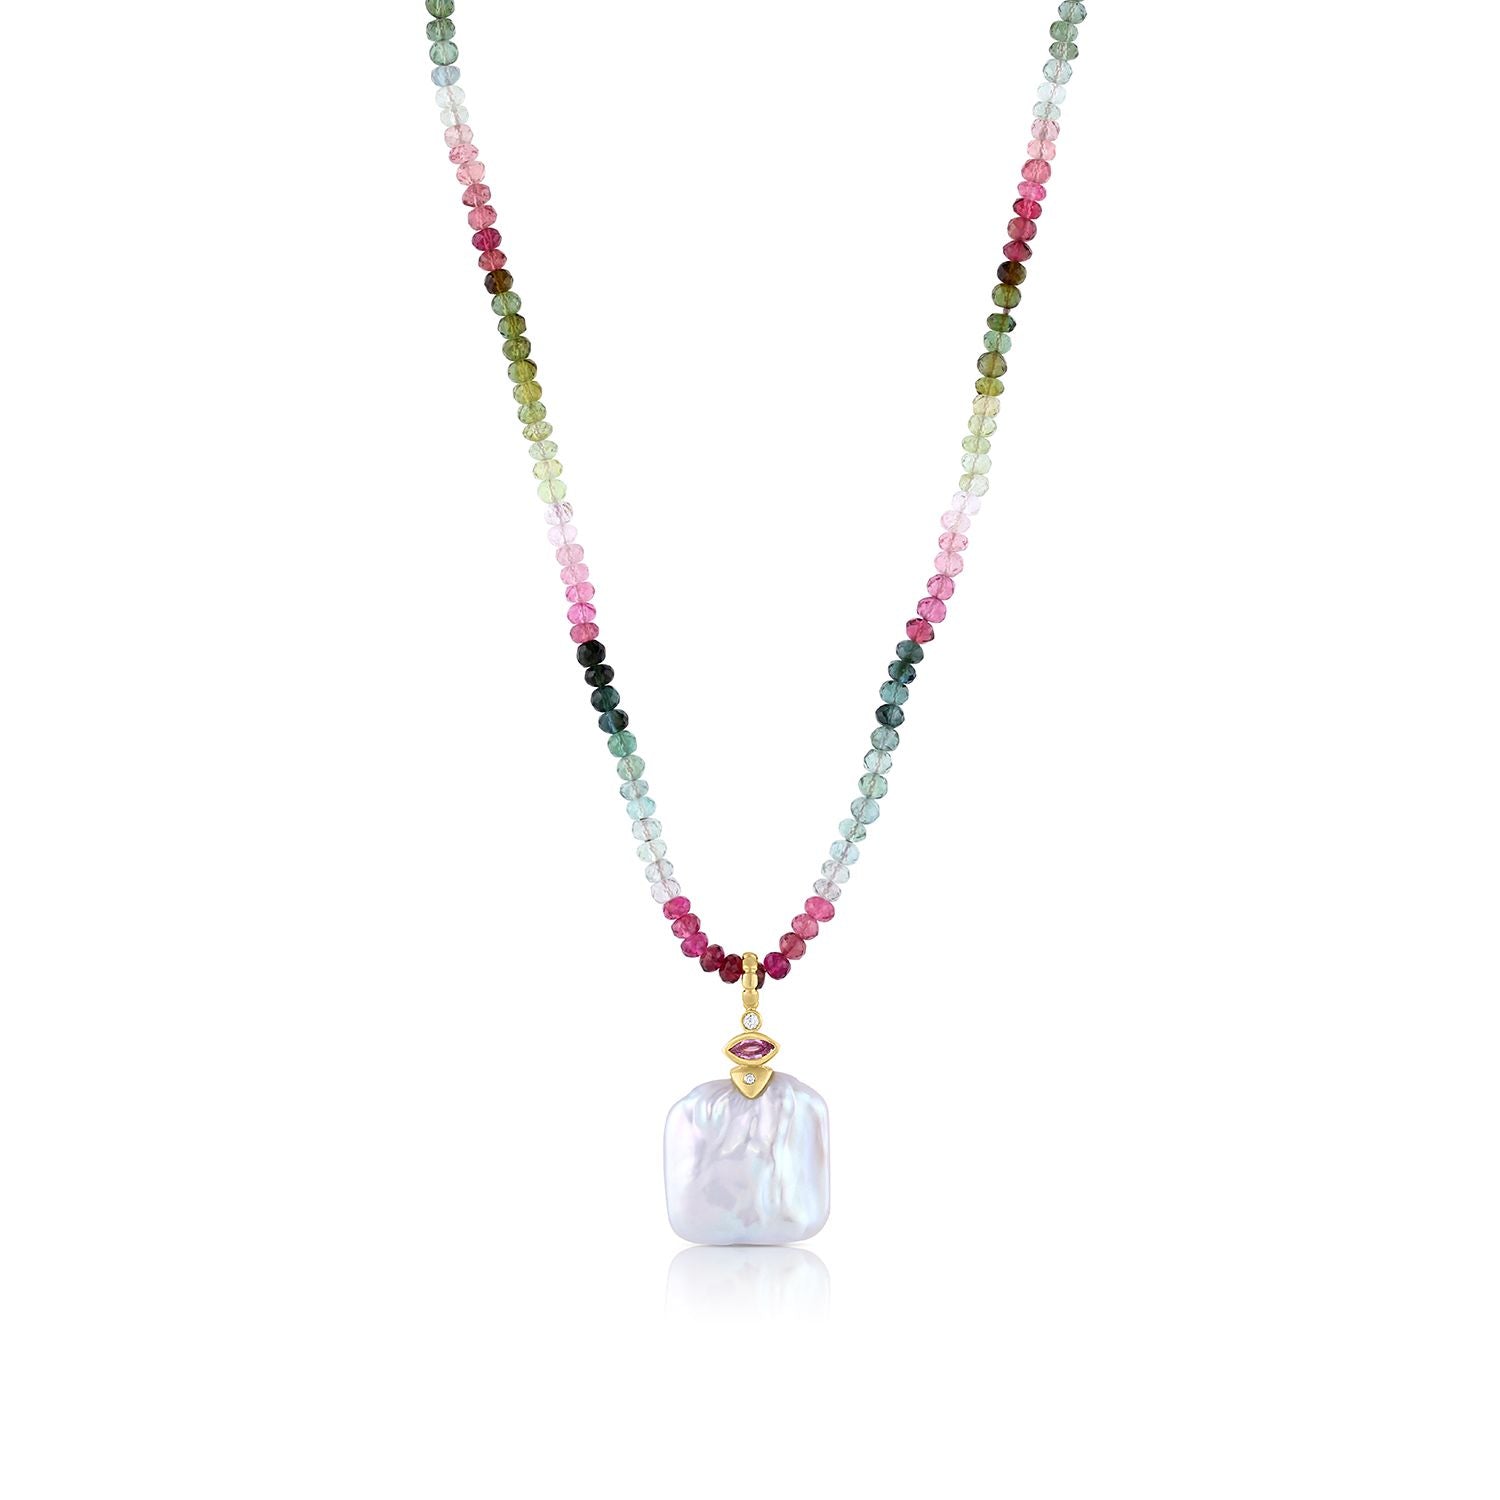 975 Carat Pink Natural Bangkok Ruby Beads Necklace, Size: 4-5 Mm, 195 Gram  at Rs 35/carat in Jaipur